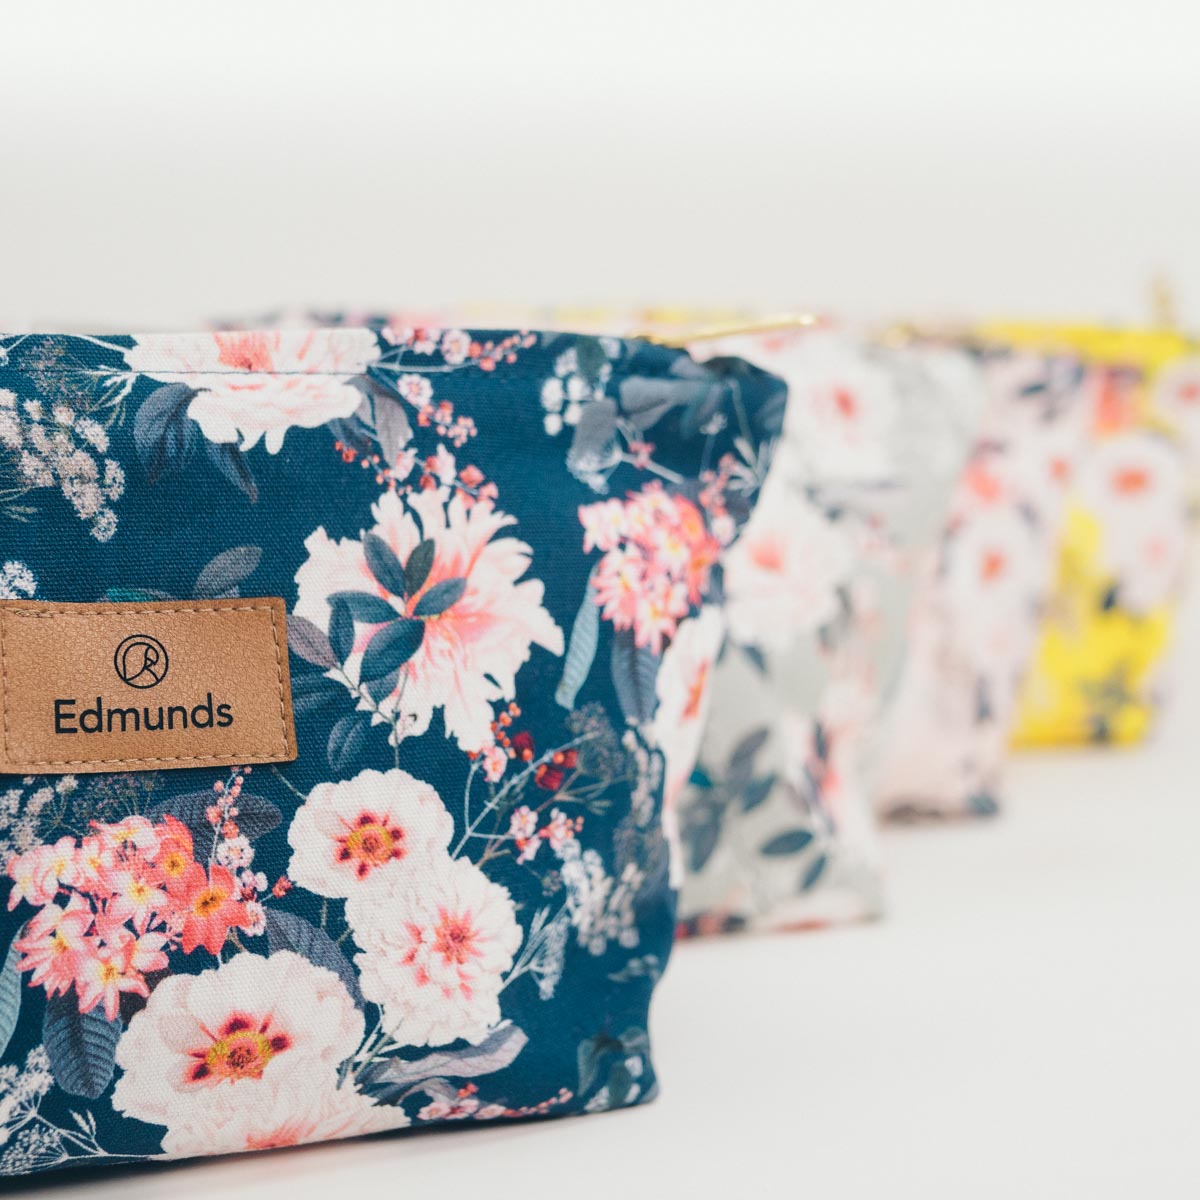 Trousse - Bloom Flowers | Edmunds